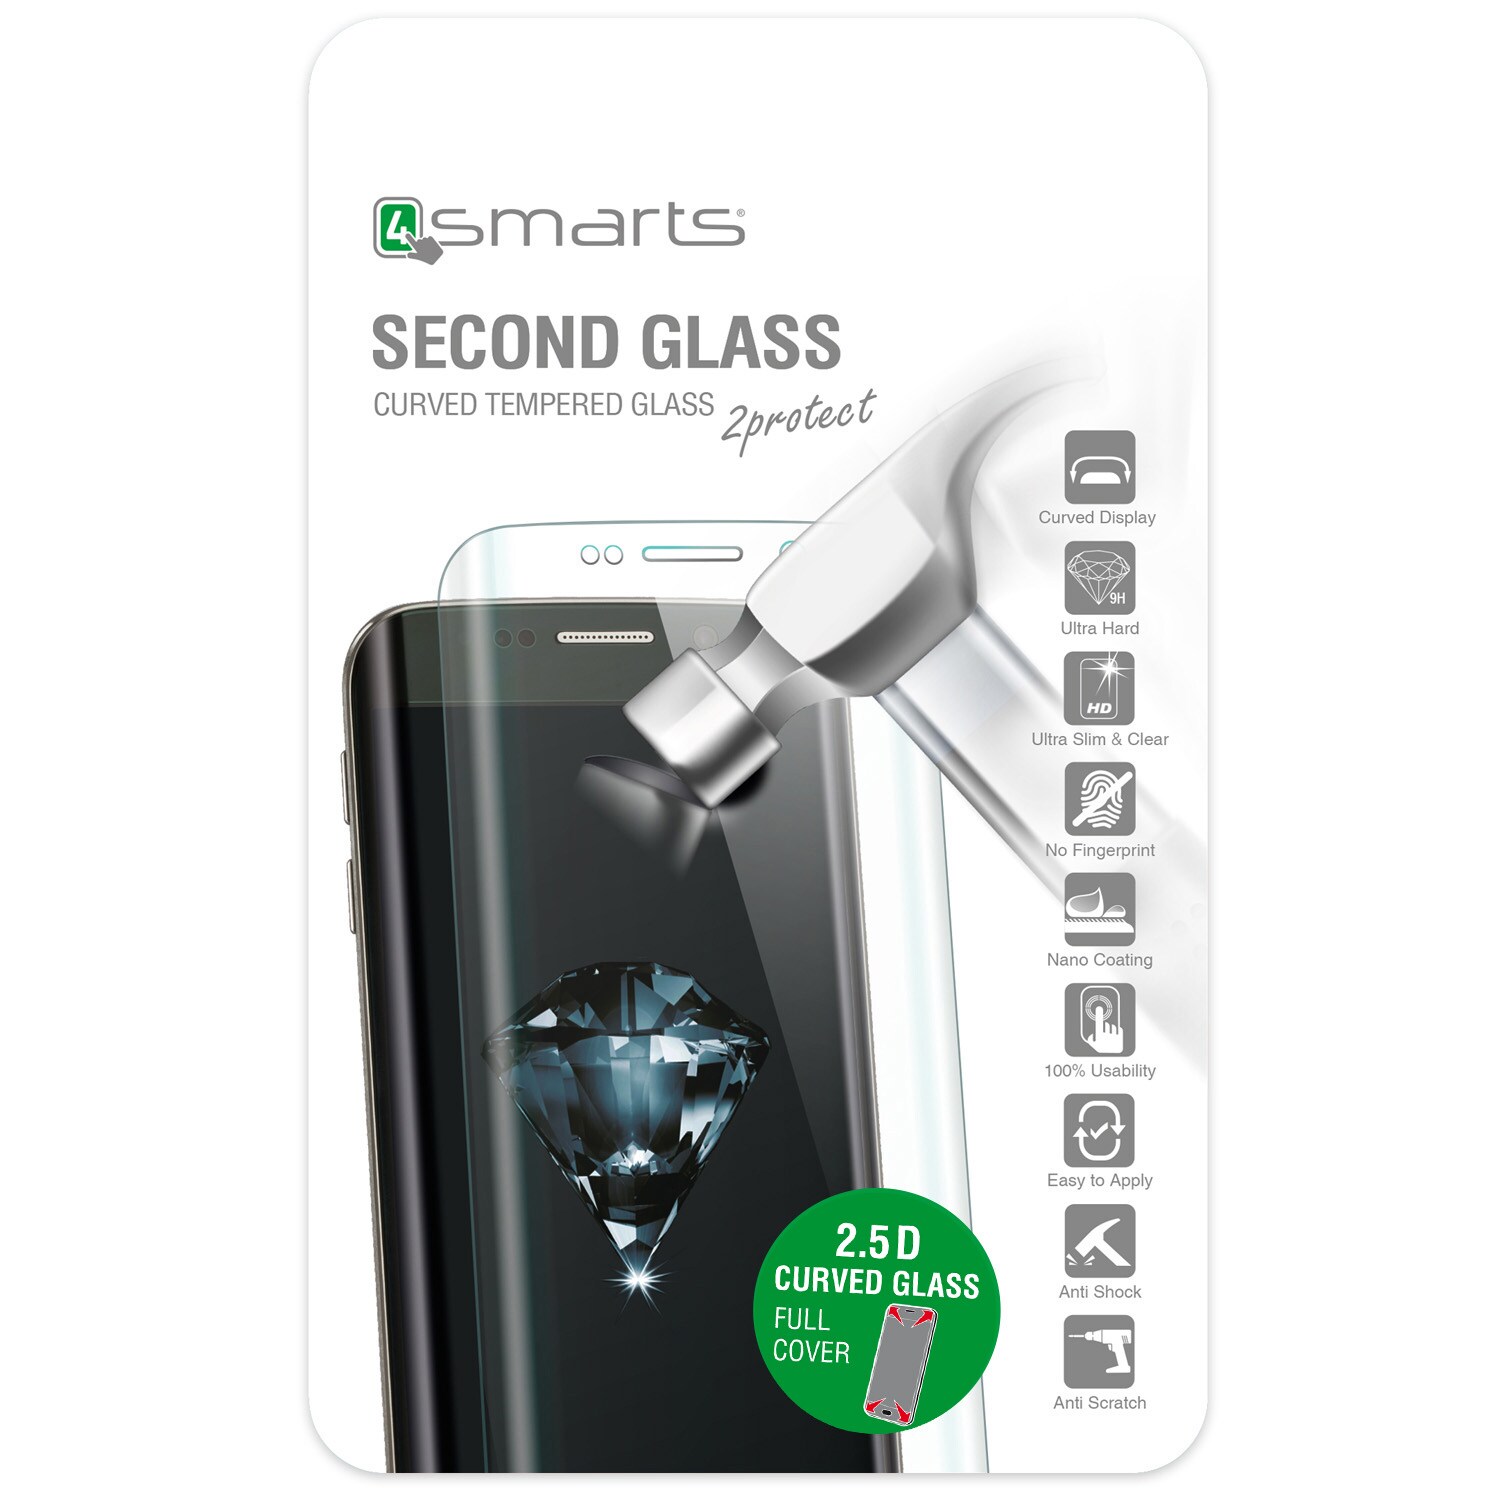 4smarts Second Glass Curved 2.5D til iPhone 7 -  Svart